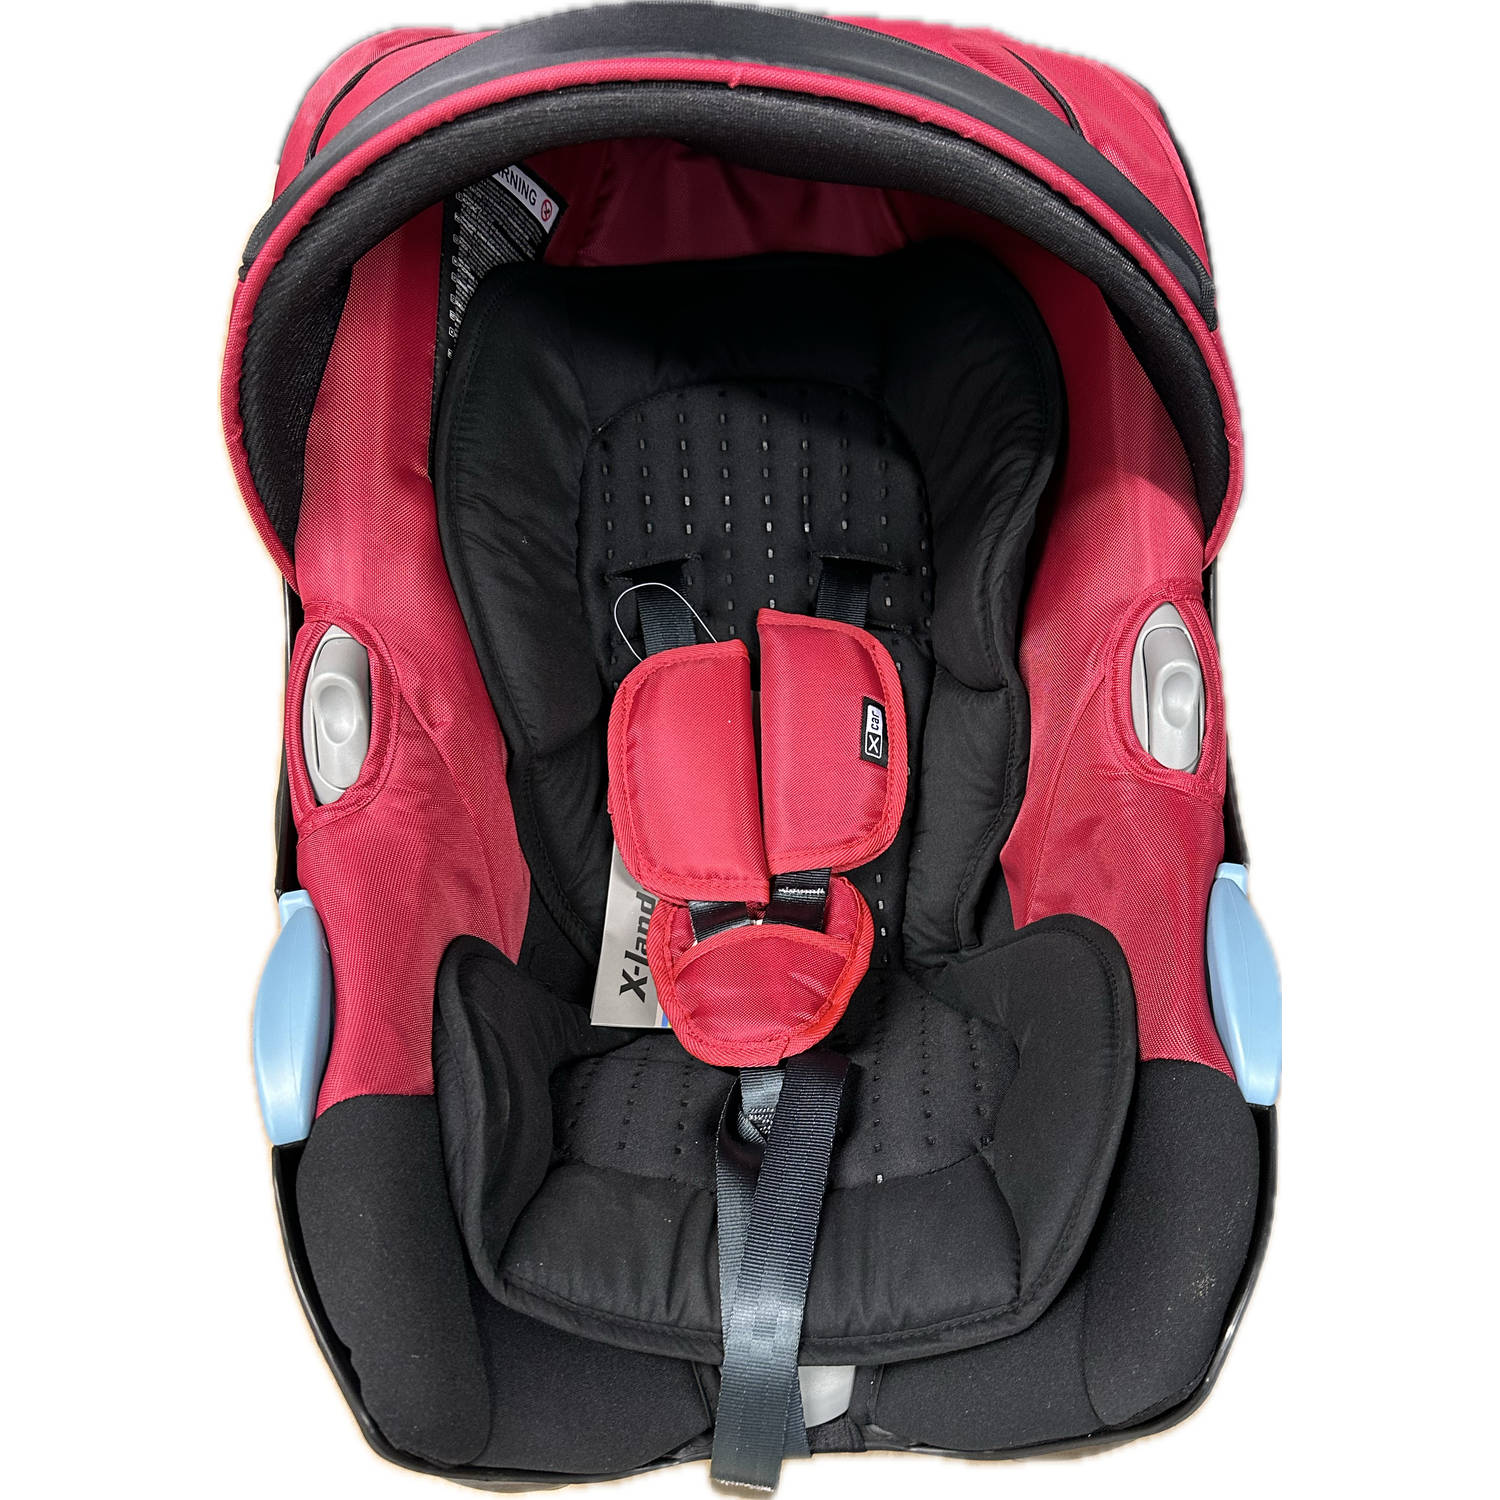 X-Lander Xcar rood autostoel voor 0 tot 13 maanden: veilig en comfortabel reizen met je baby